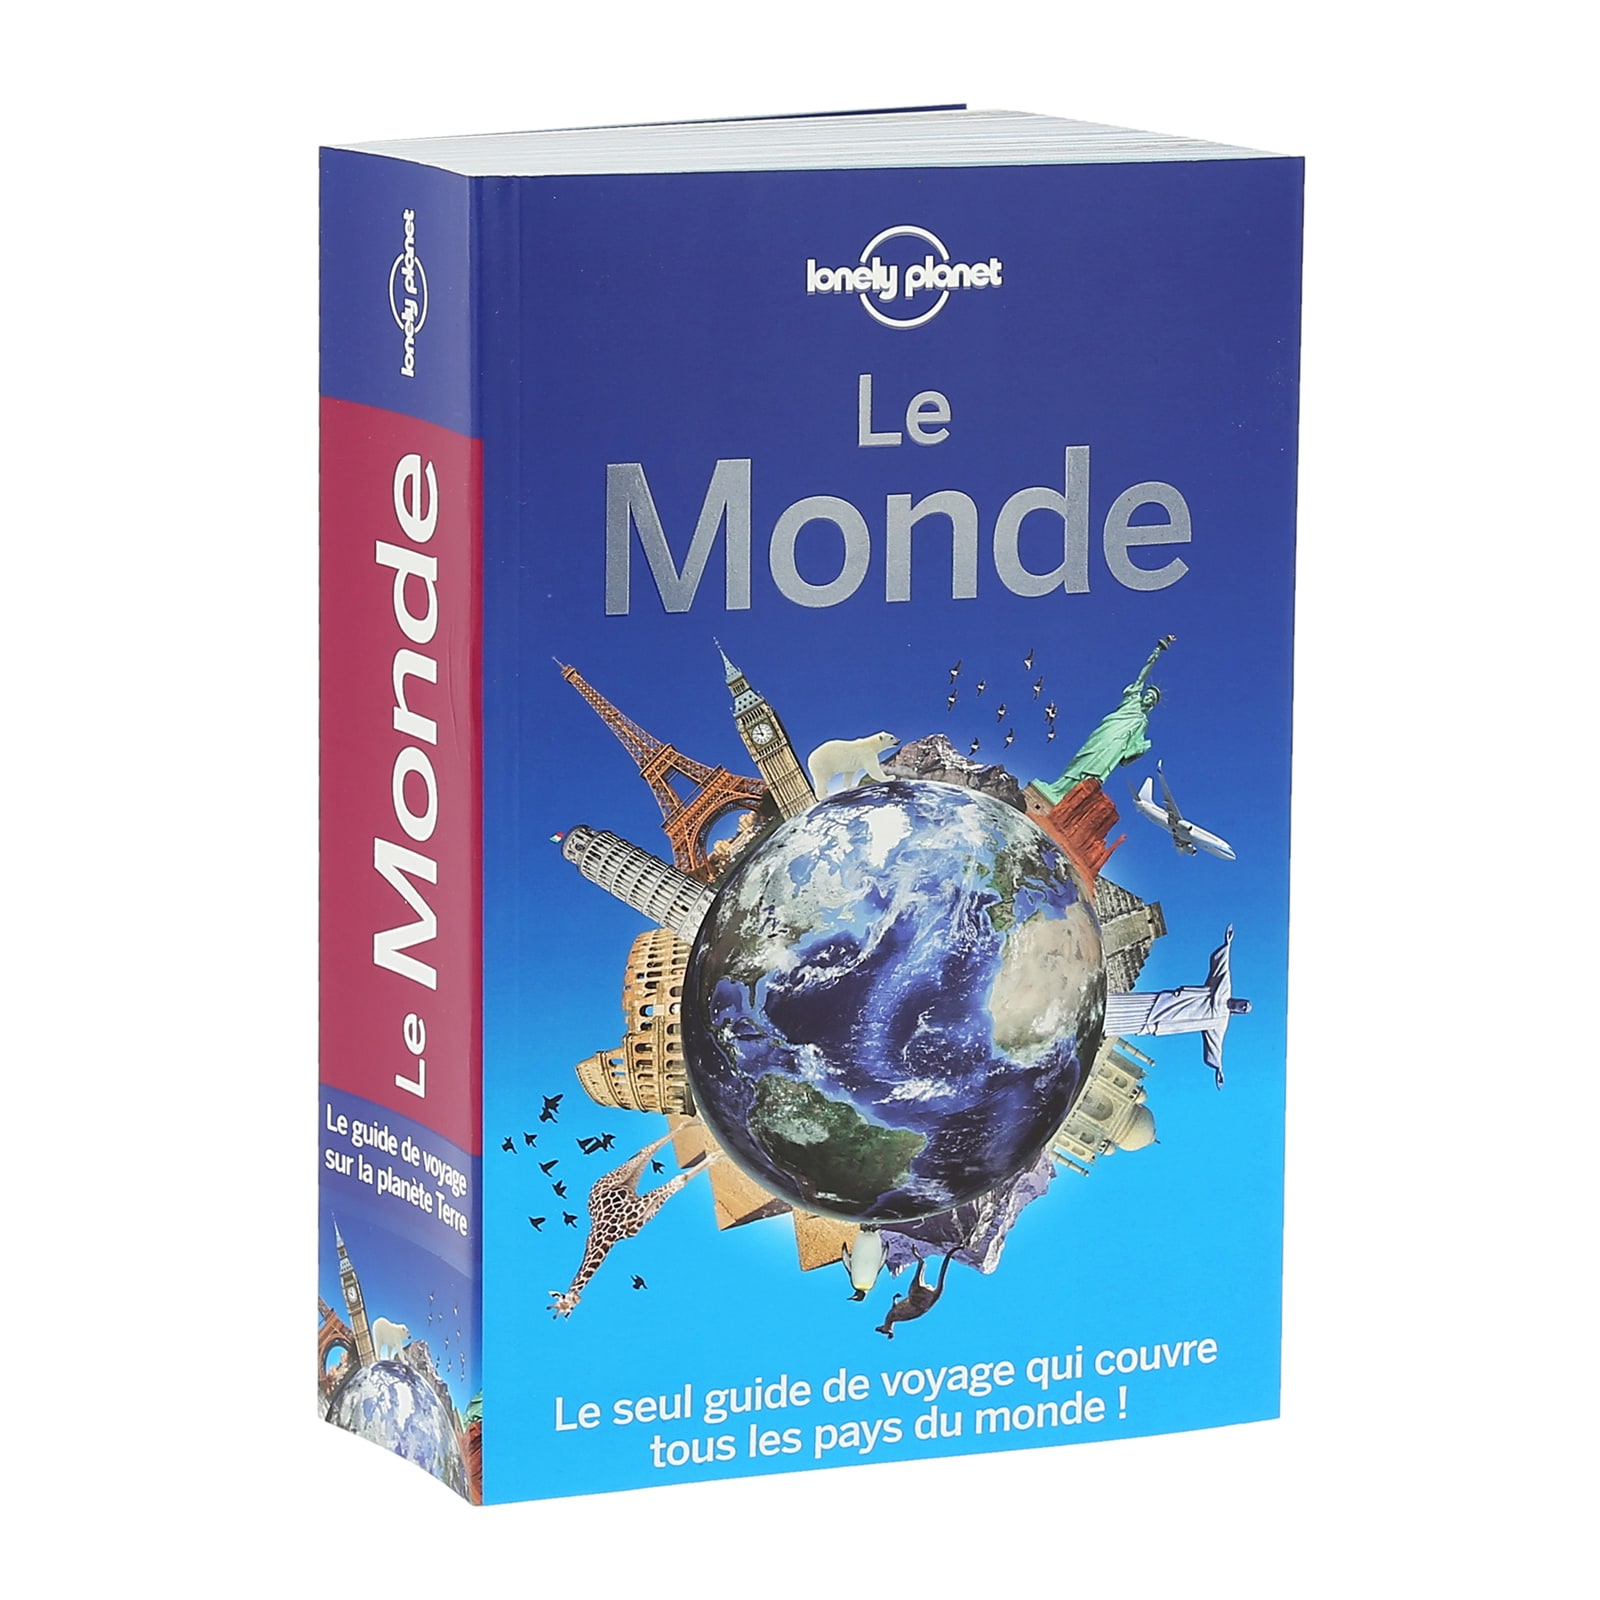 Le Monde - Lonely